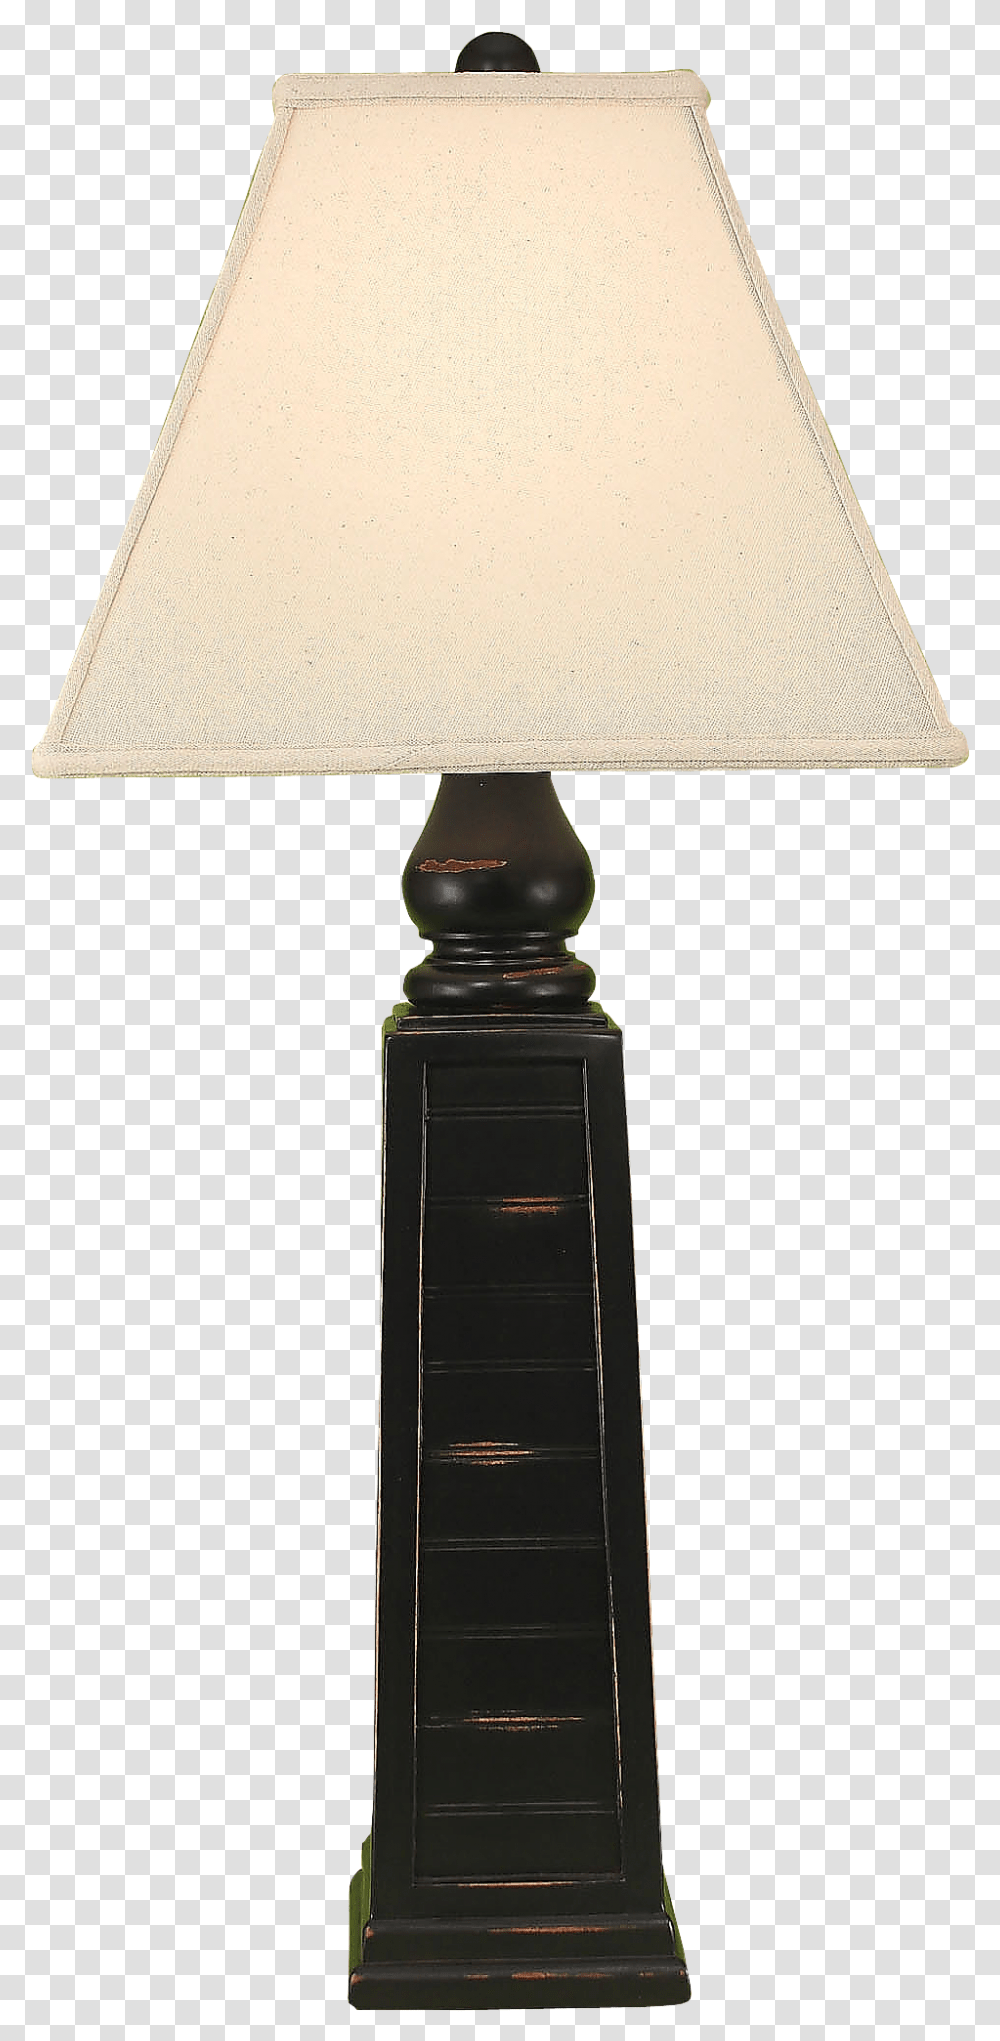 Distressed Black Pyramid Table Lamp Lamp, Lampshade Transparent Png